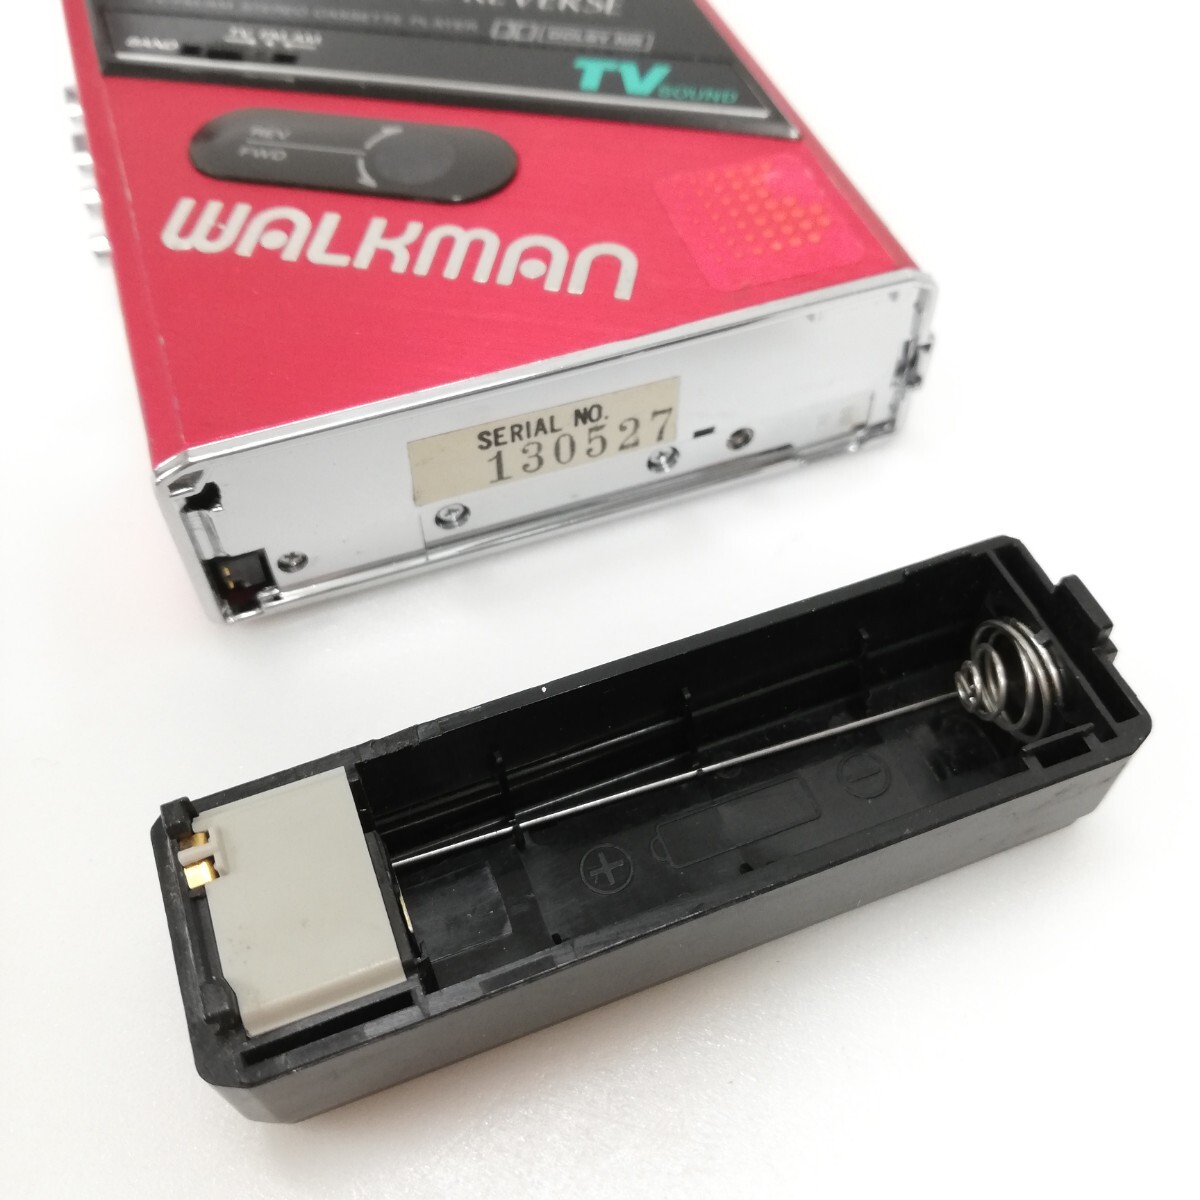 6 SONY Sony WALKMAN Walkman FM AM портативный кассетная магнитола WM-F101 кассетная магнитола радио красный электризация не проверка Junk 